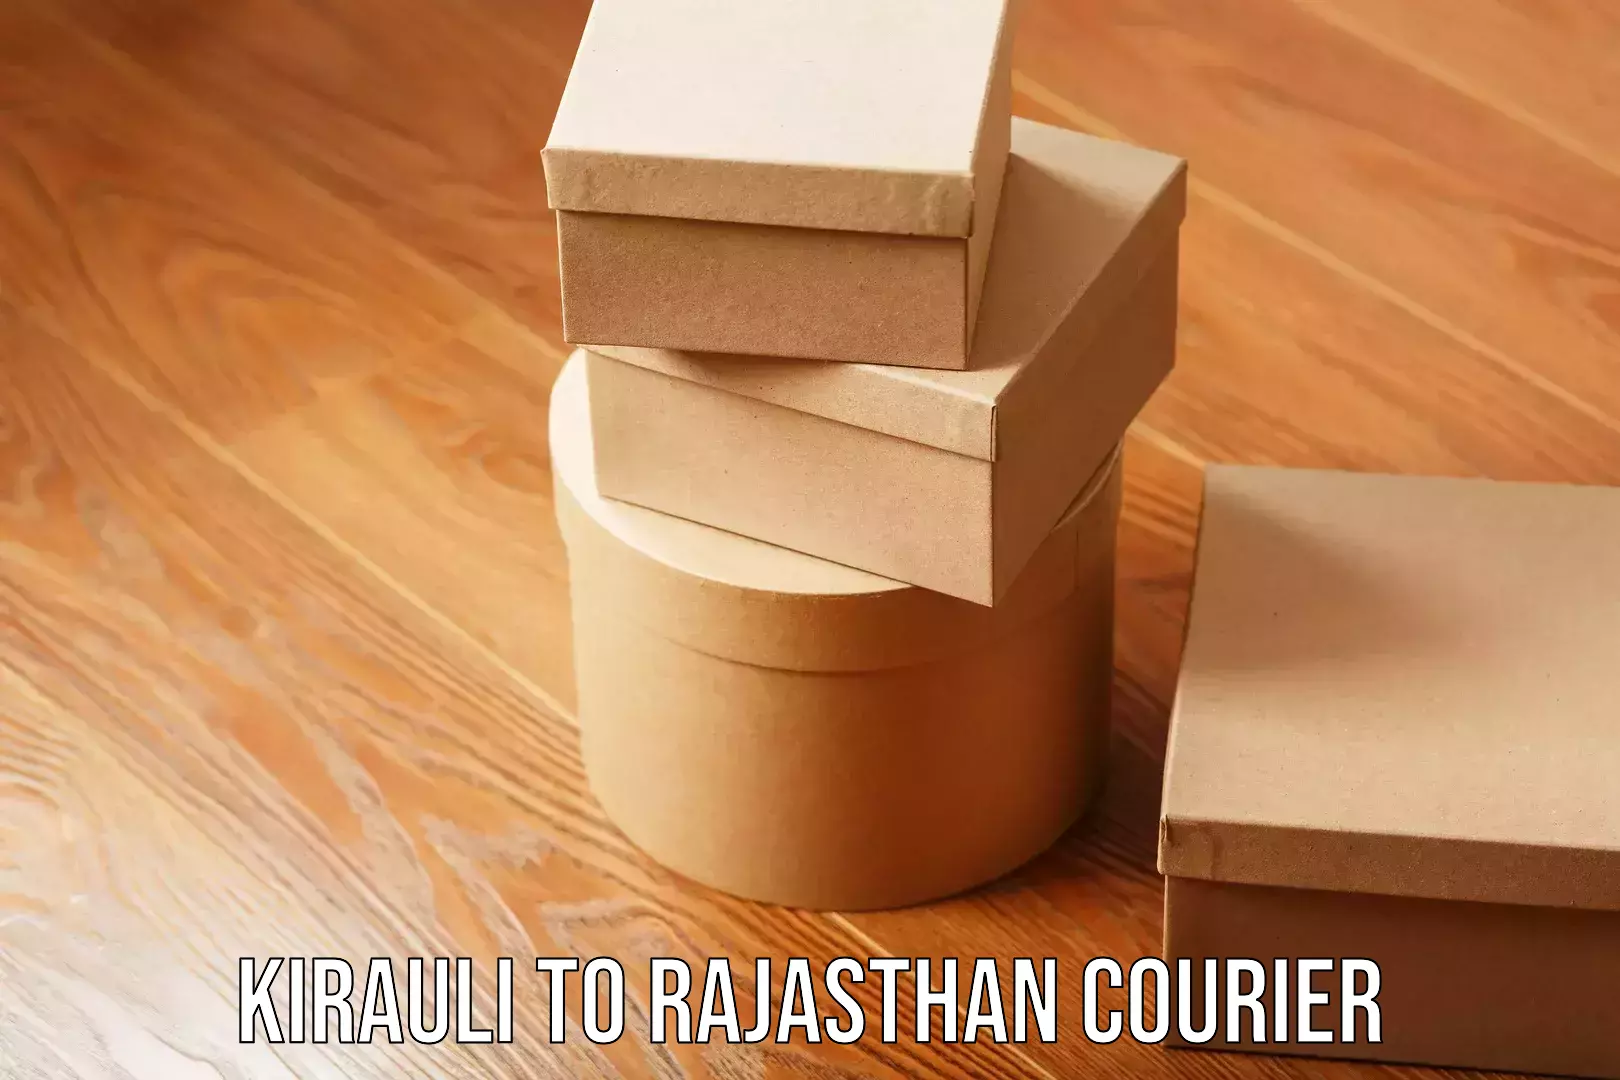 Skilled furniture transporters Kirauli to Rajasthan